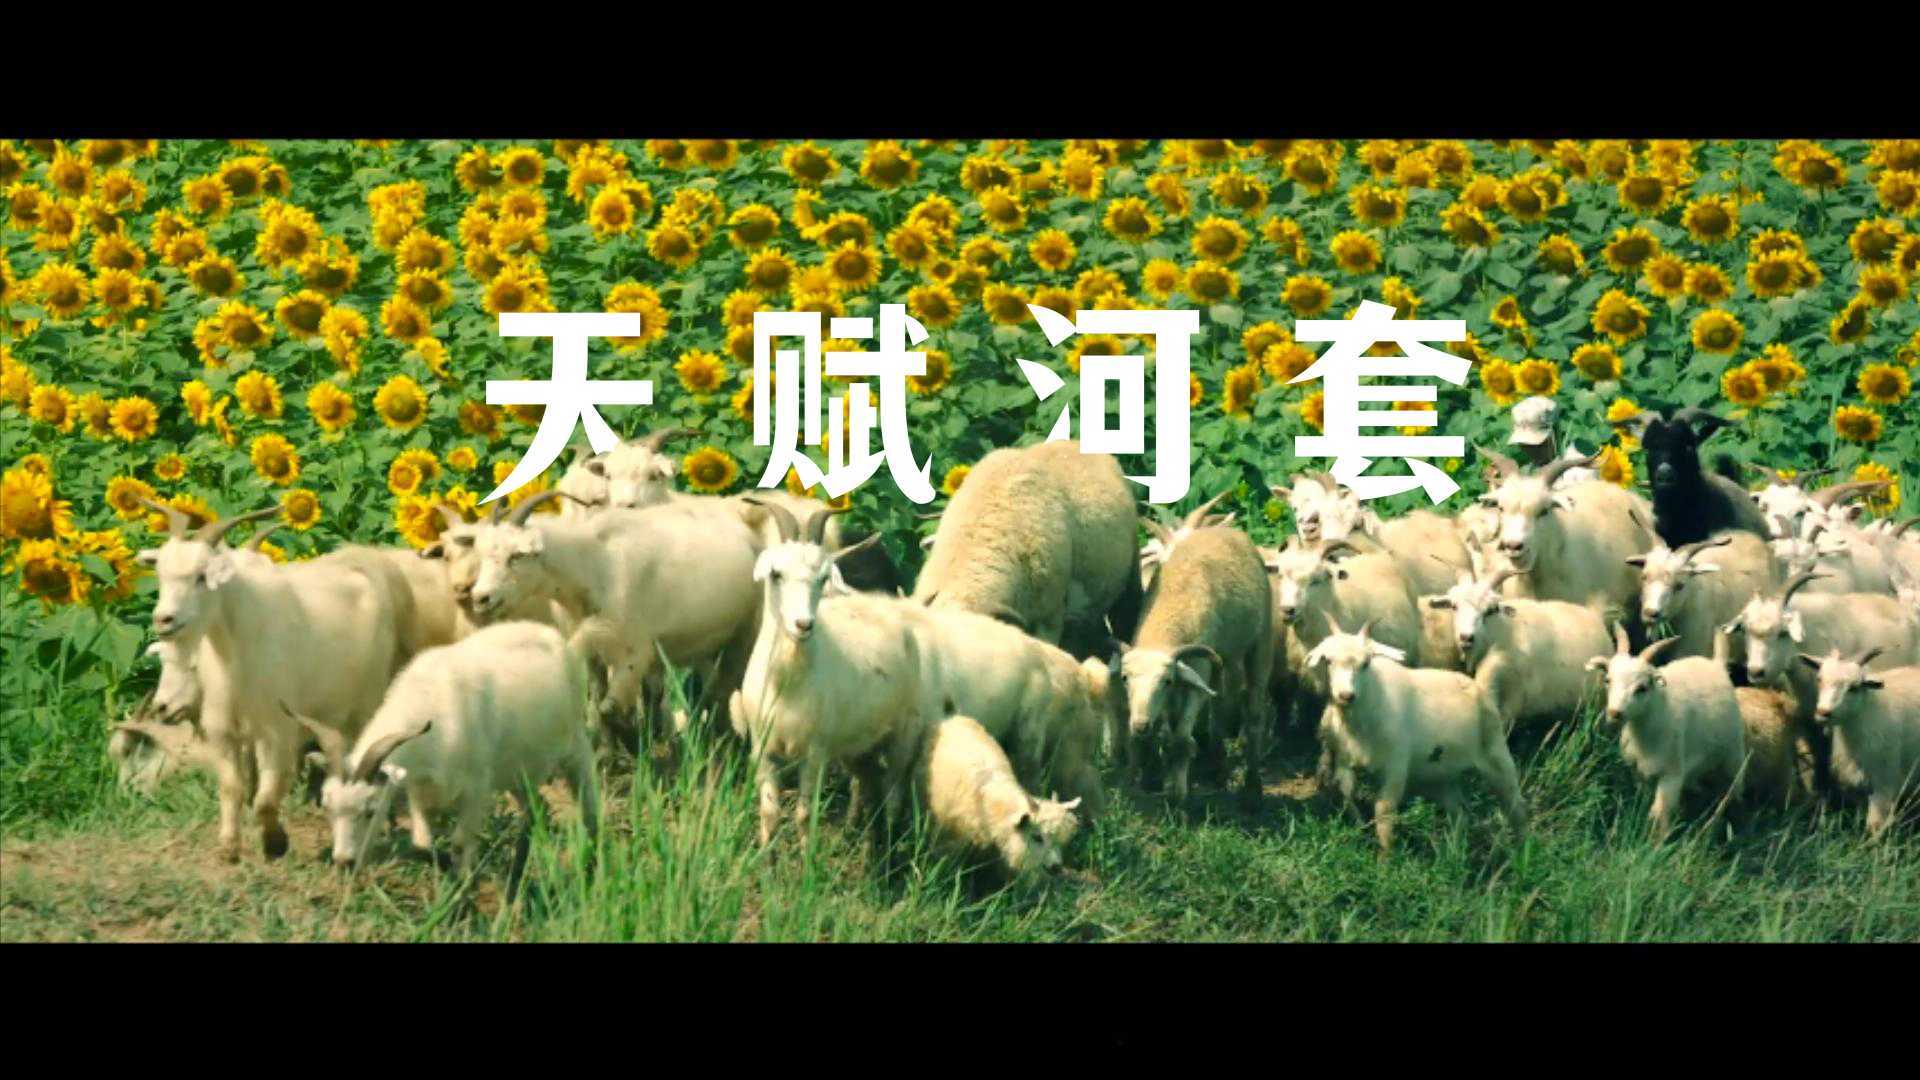 内蒙古巴彦淖尔农产品区域公用品牌《天赋河套》形象片